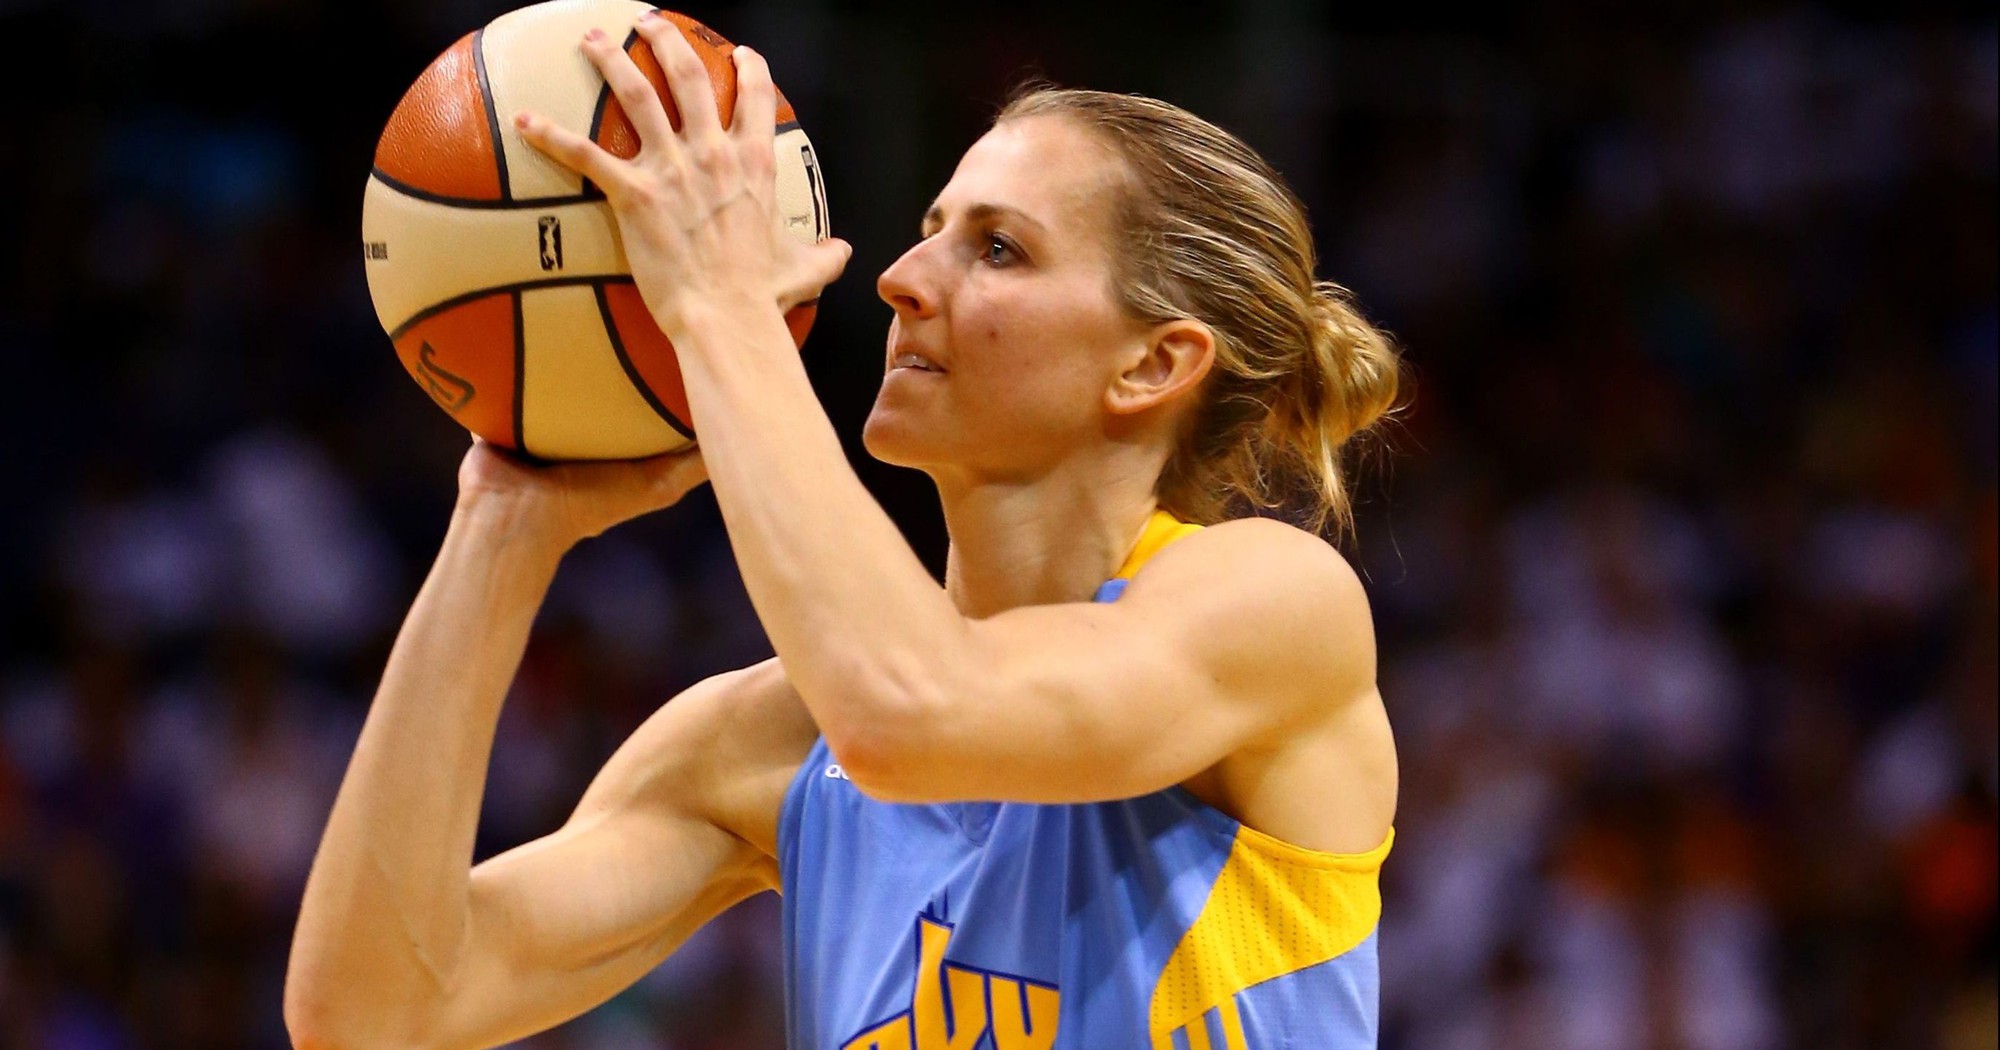 Khi nữ cầu thủ WNBA này thi ném 3 thì Stephen Curry phải gọi bằng cụ - Ảnh 1.